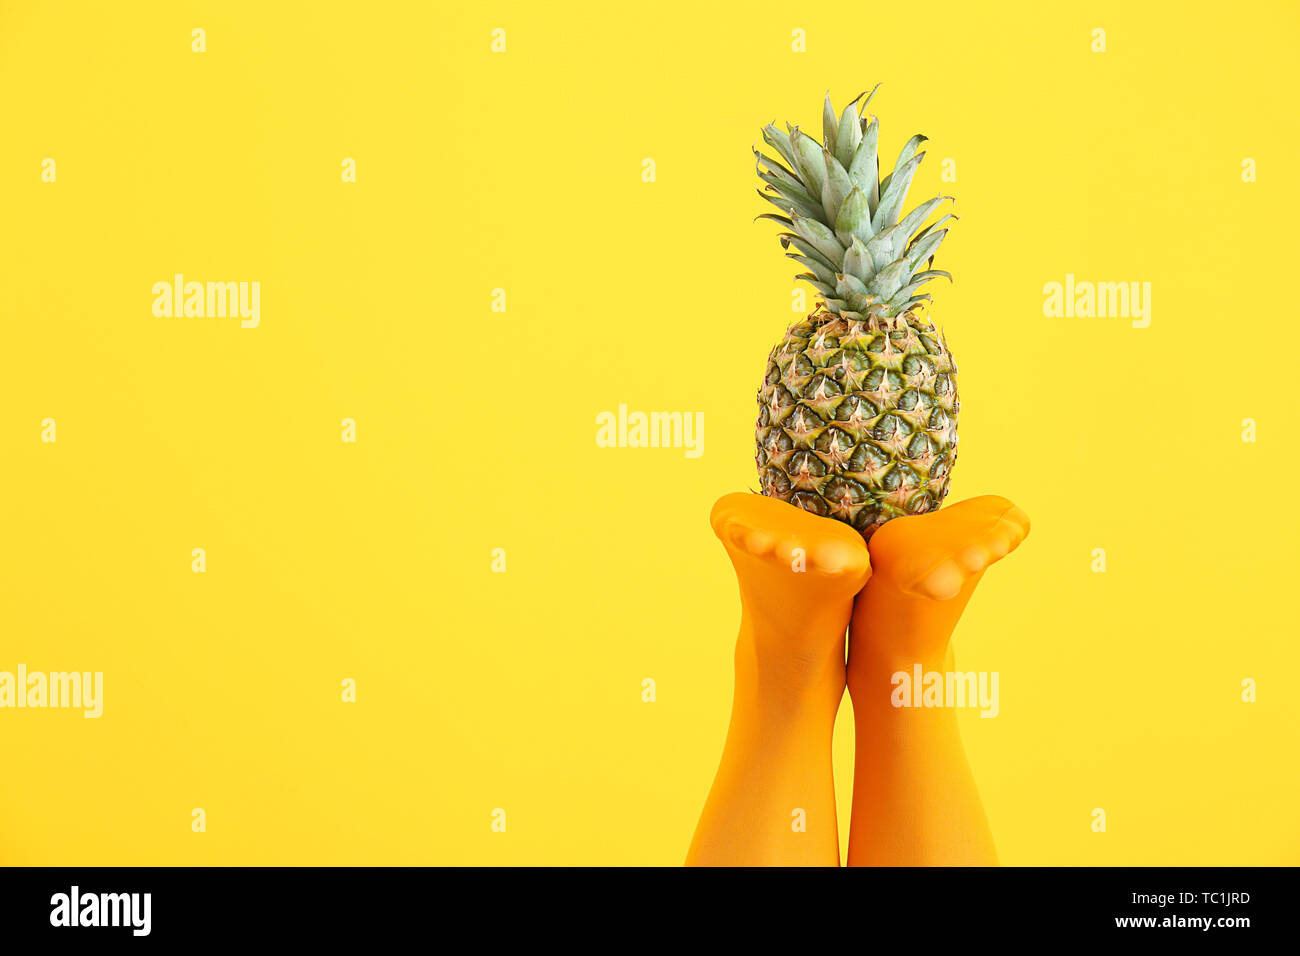 Beine der schöne junge Frau in Strumpfhosen und Ananas auf farbigen  Hintergrund Stockfotografie - Alamy